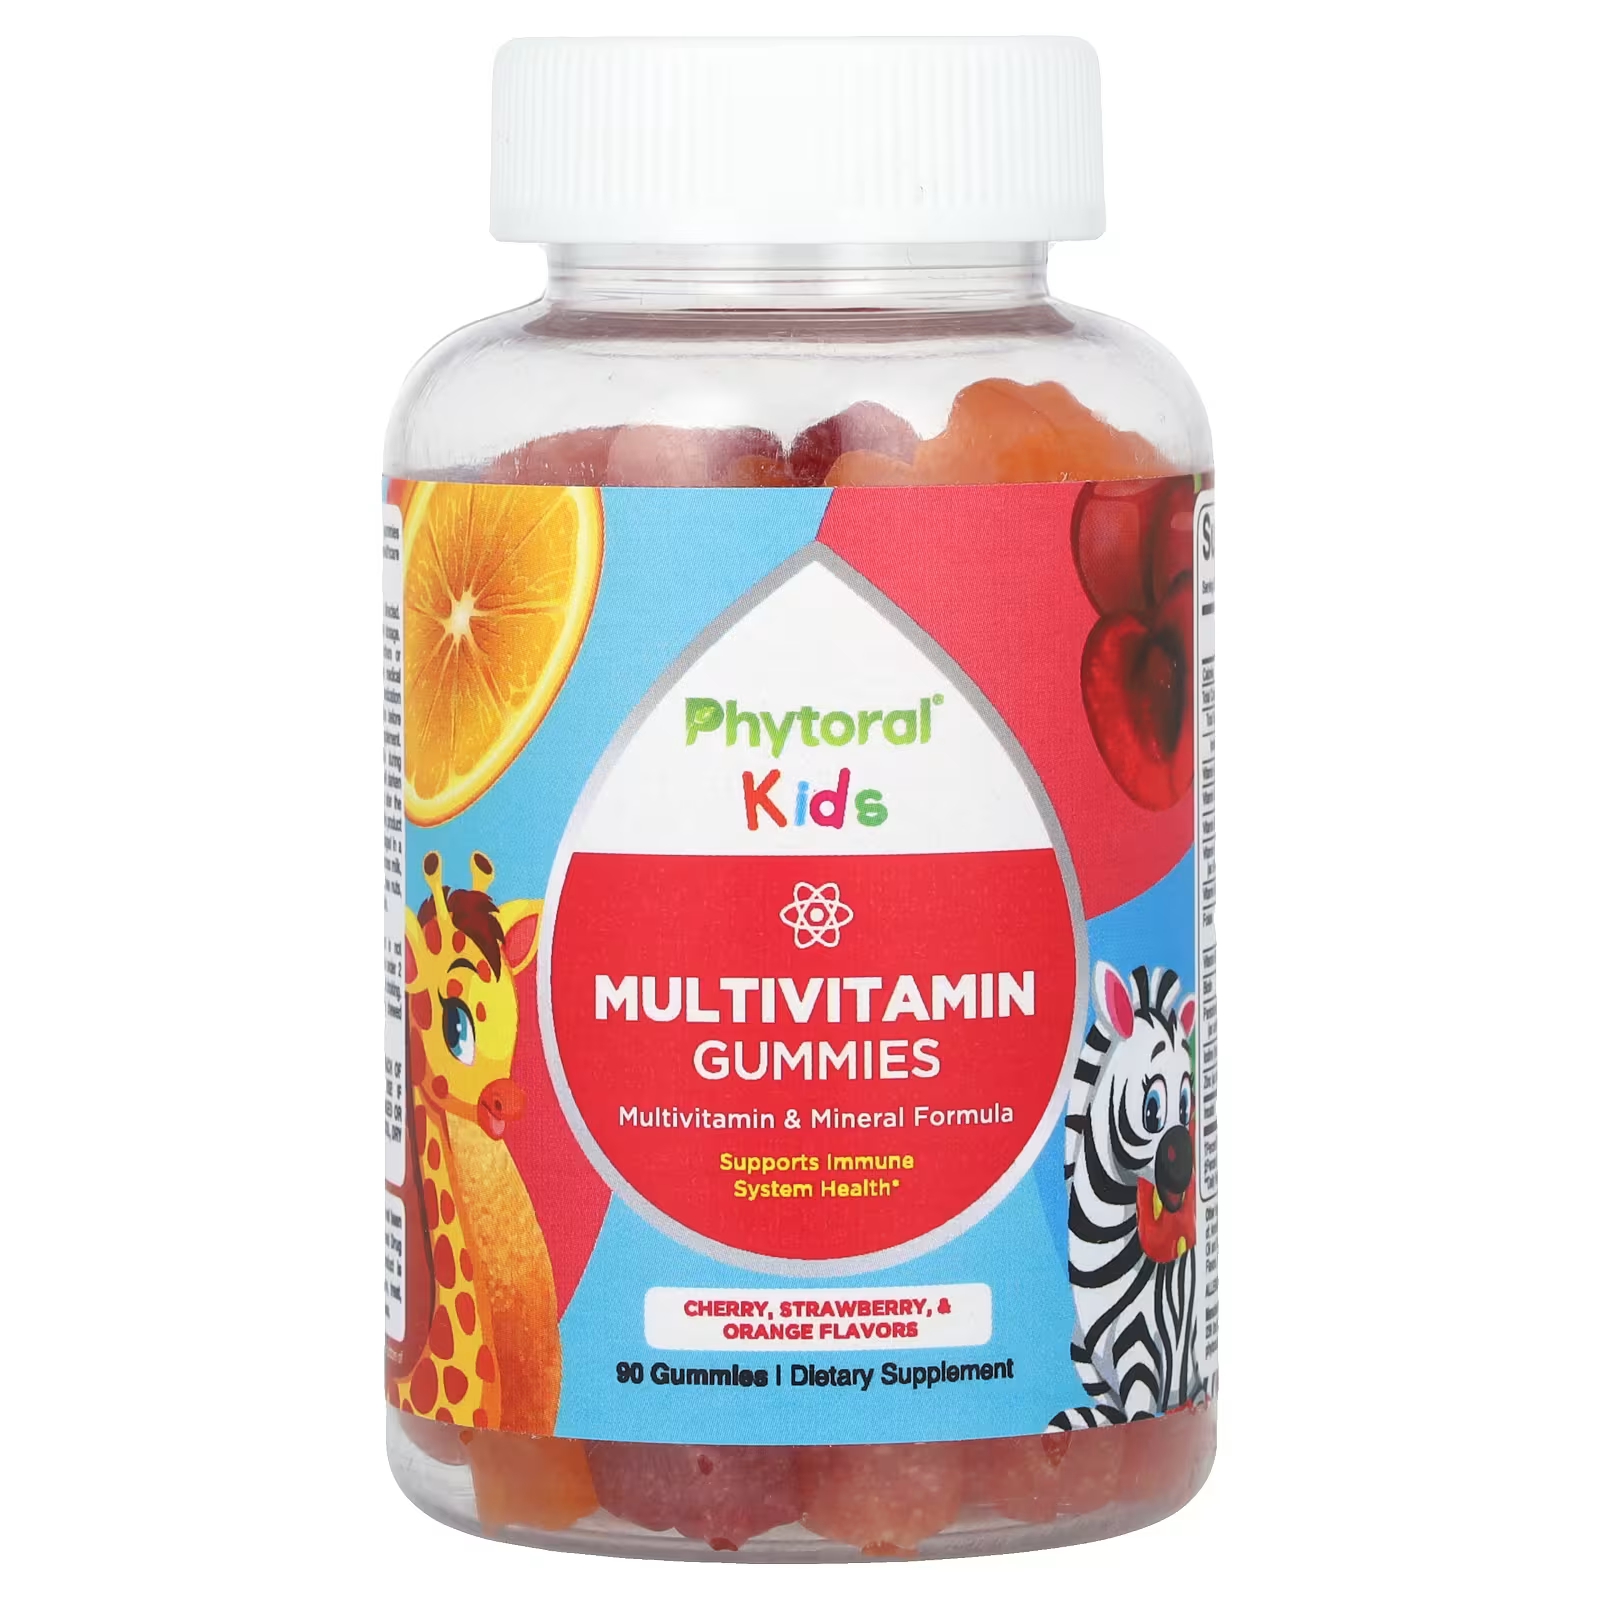 Мультивитаминны Phytoral Kids с вишней, клубникой и апельсином, 90 штук цена и фото